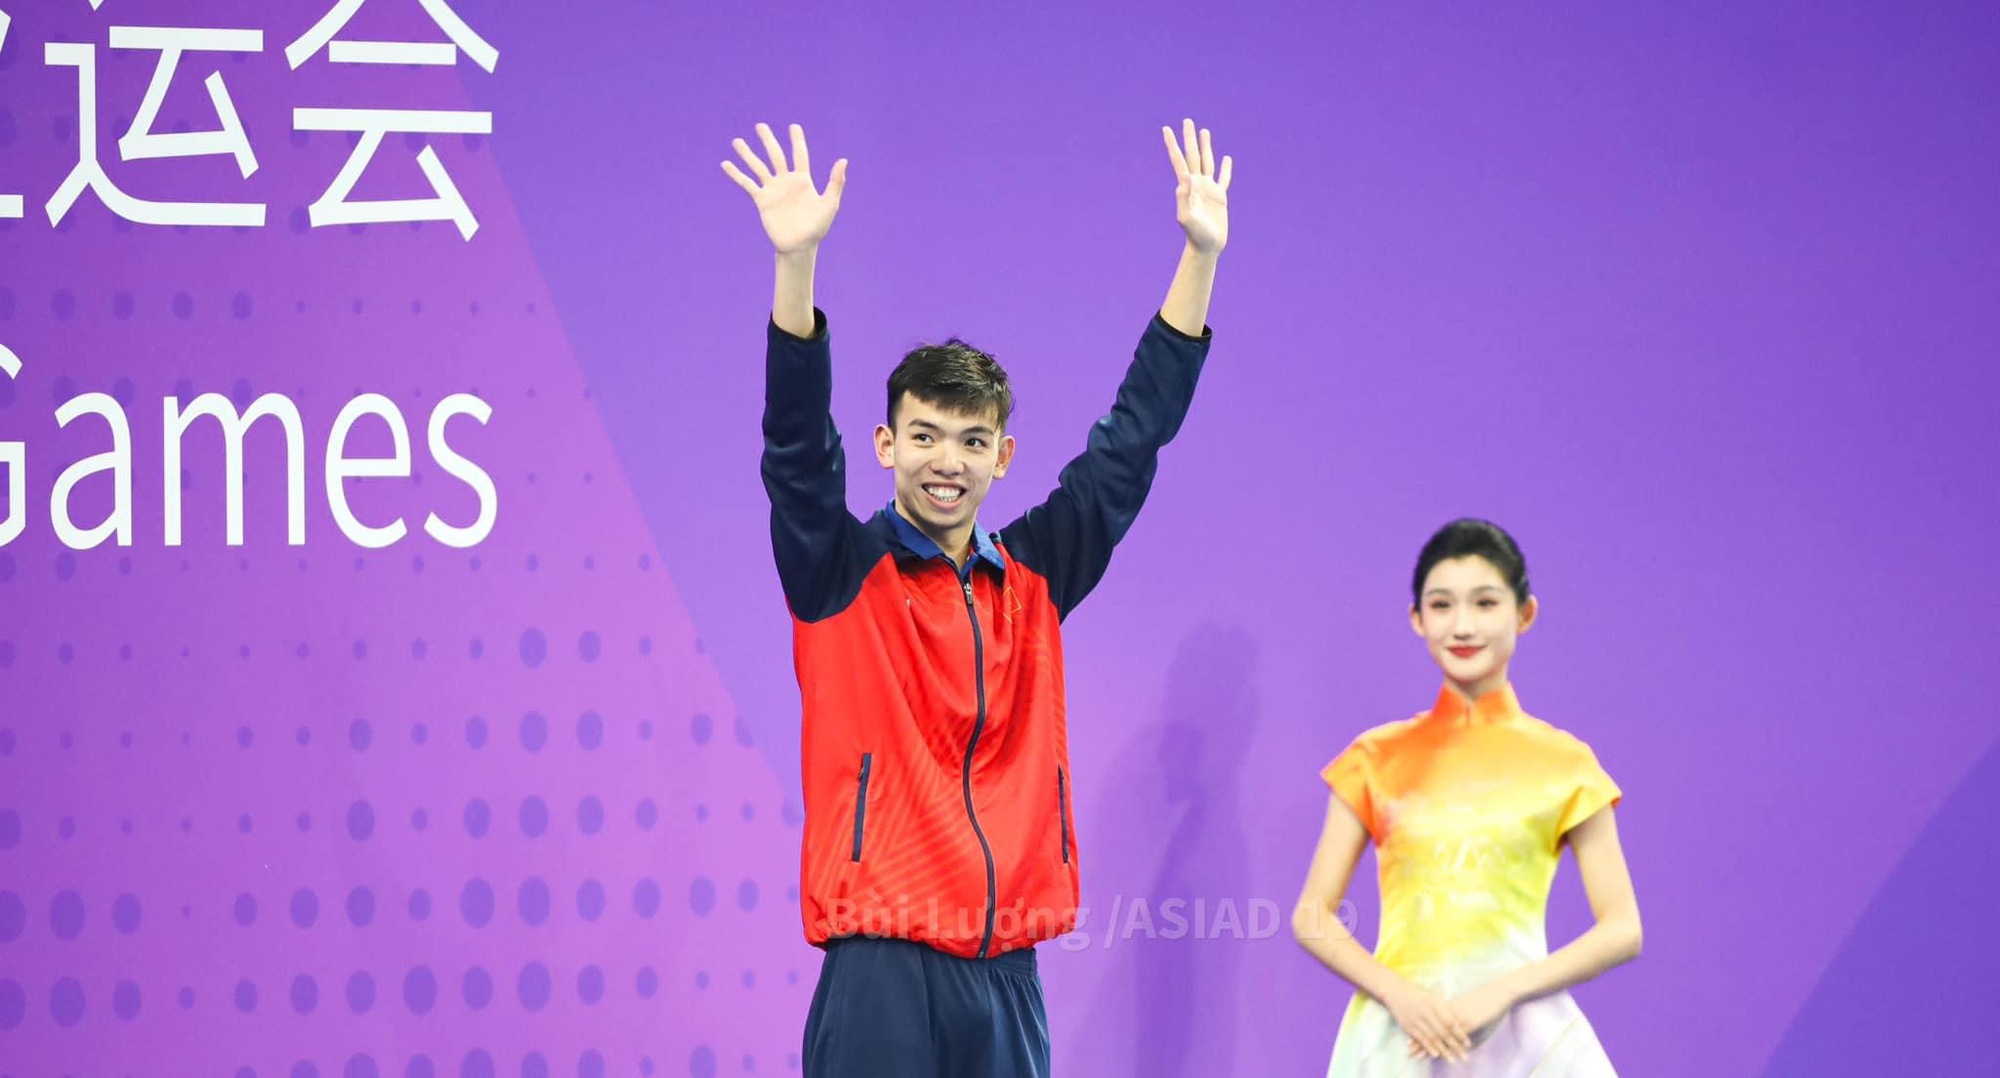 ASIAD 19: Kình ngư Huy Hoàng giành HCĐ thứ 2, 3 tài năng trẻ vào chung kết điền kinh - Ảnh 9.